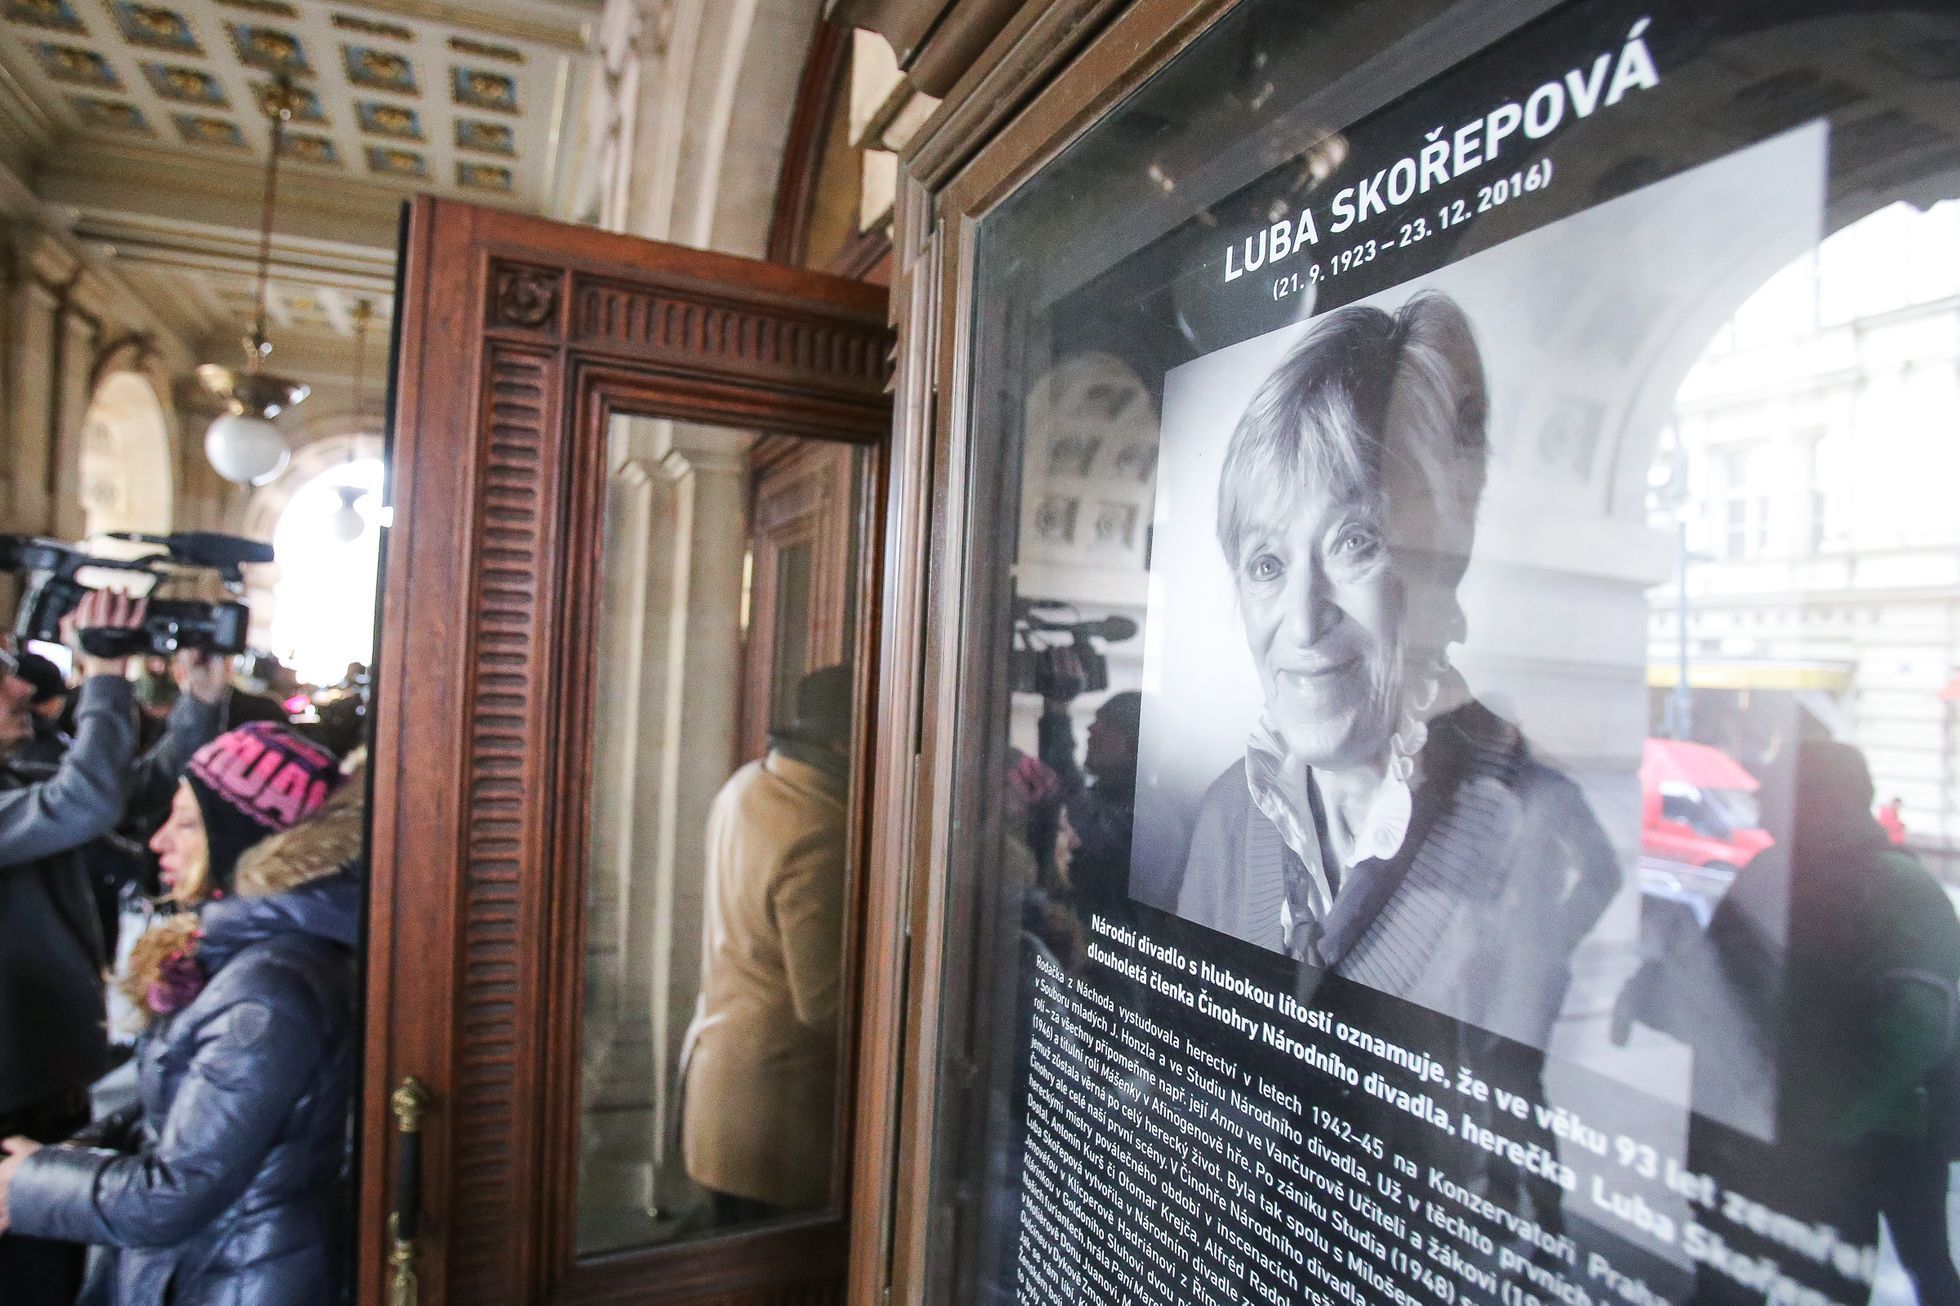 Poslední rozloučení s Lubou Skořepovou ve foyer Národního divadla